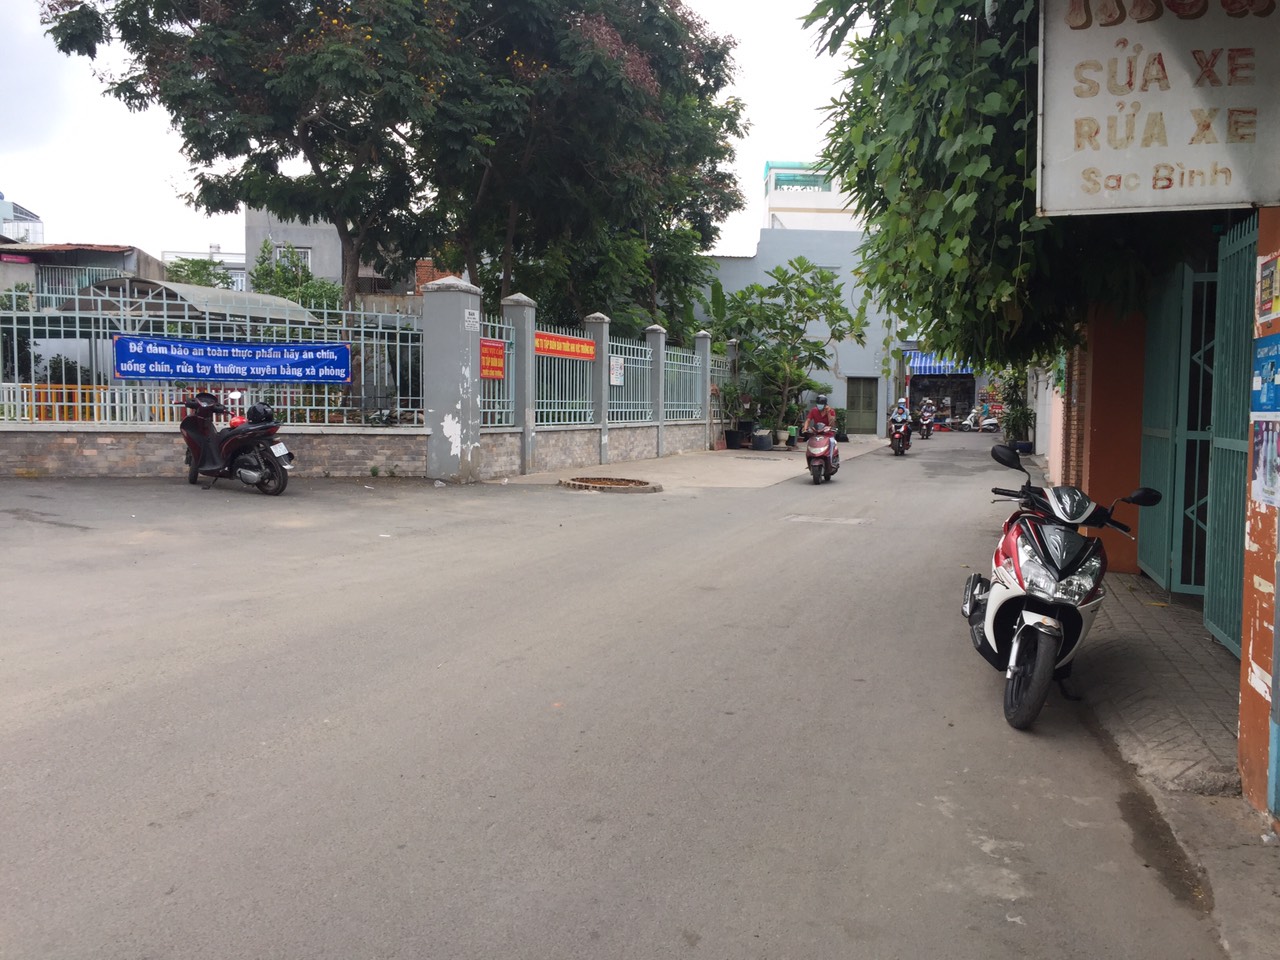 Bán nhà mặt tiền kinh doanh đường 359, Phước Long B, Quận 9, DT: 149 m2 - 8.5 tỷ